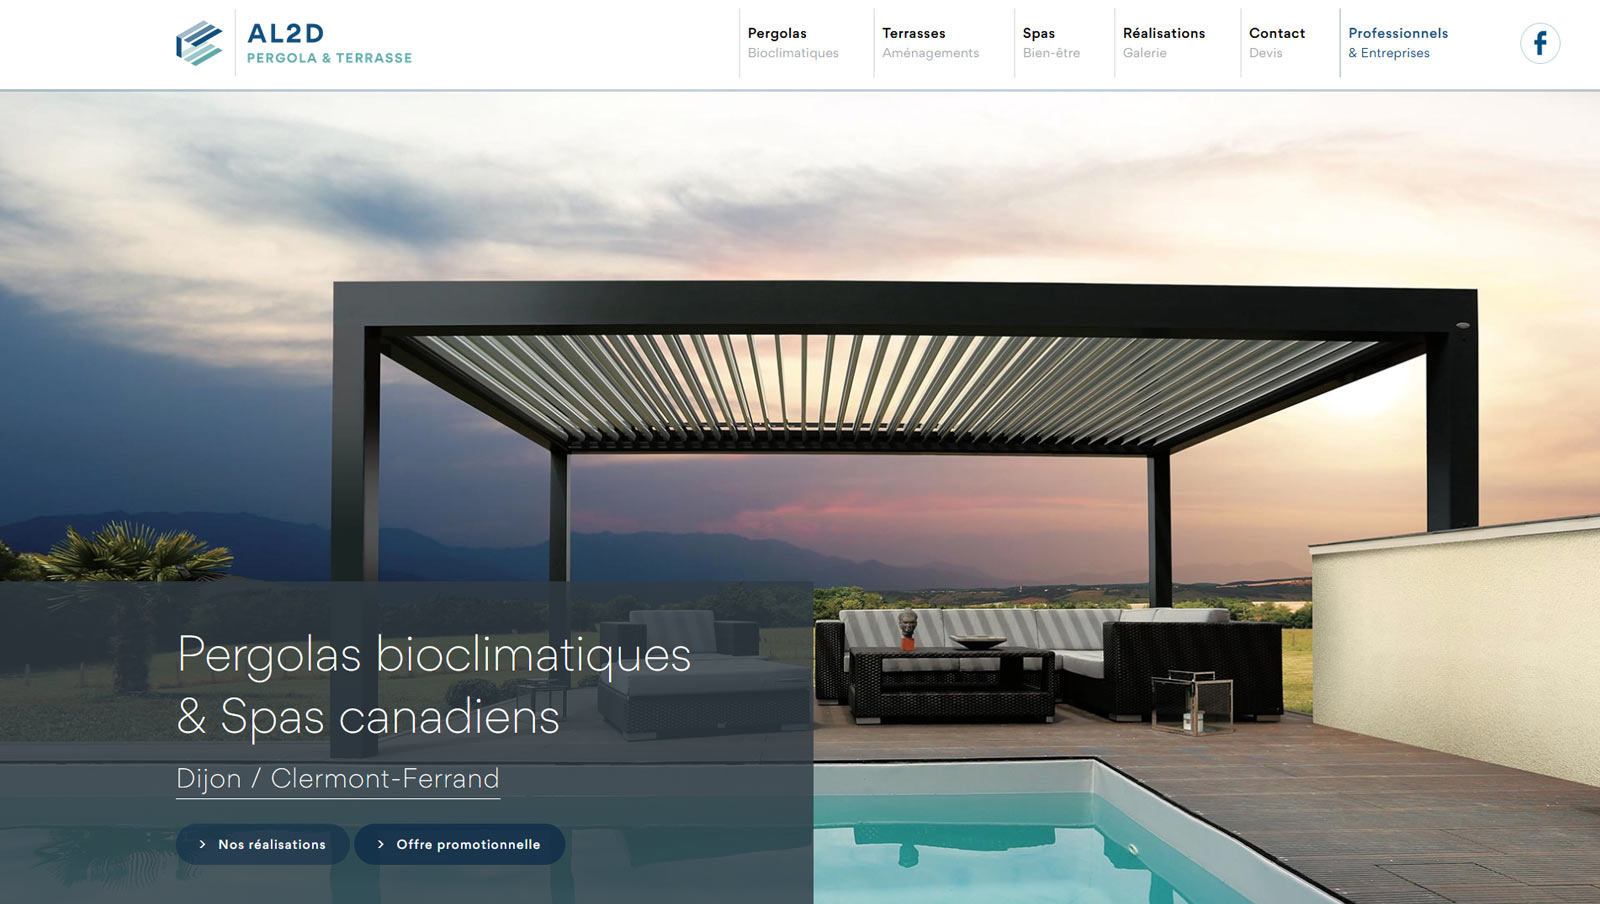 Création site internet vitrine : webdesign et développement pour AL2D Pergola et Terrasse, pergola bioclimatique Dijon / Clermont par Hervé Augoyat